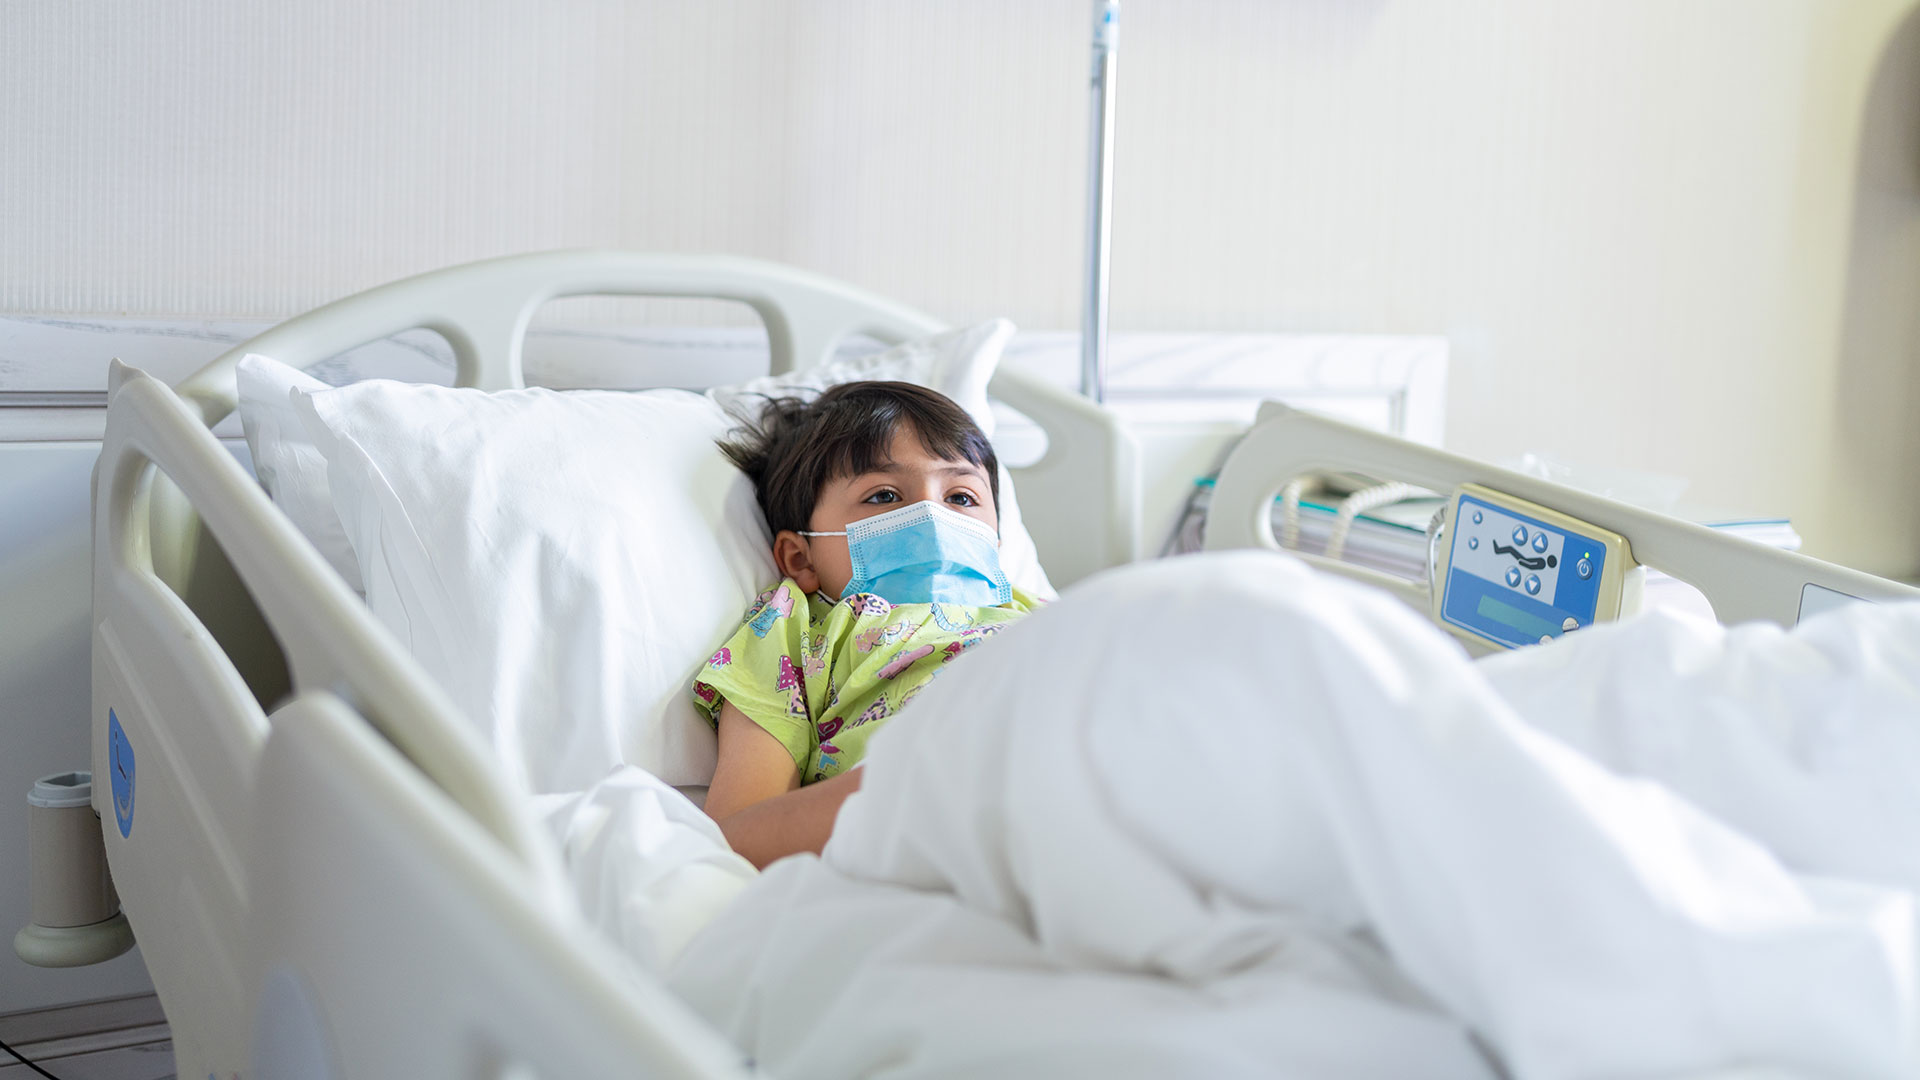 Ambos pediatras aclararon que, dentro de las instituciones sanitarias y cuando los cuadros lo ameritan, el uso de antibióticos está indicado / (Getty Images)